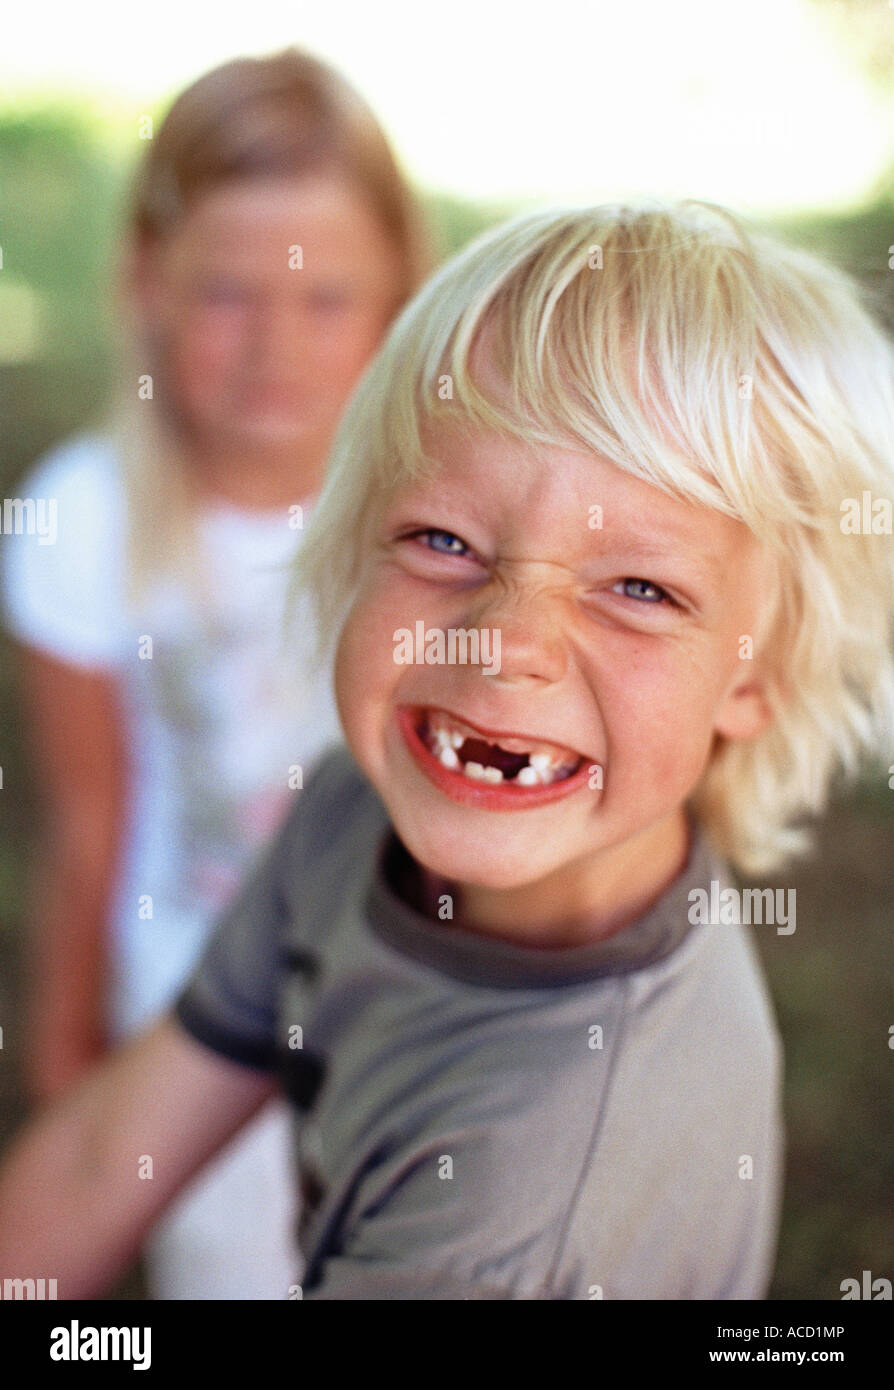 Without teeth immagini e fotografie stock ad alta risoluzione - Alamy